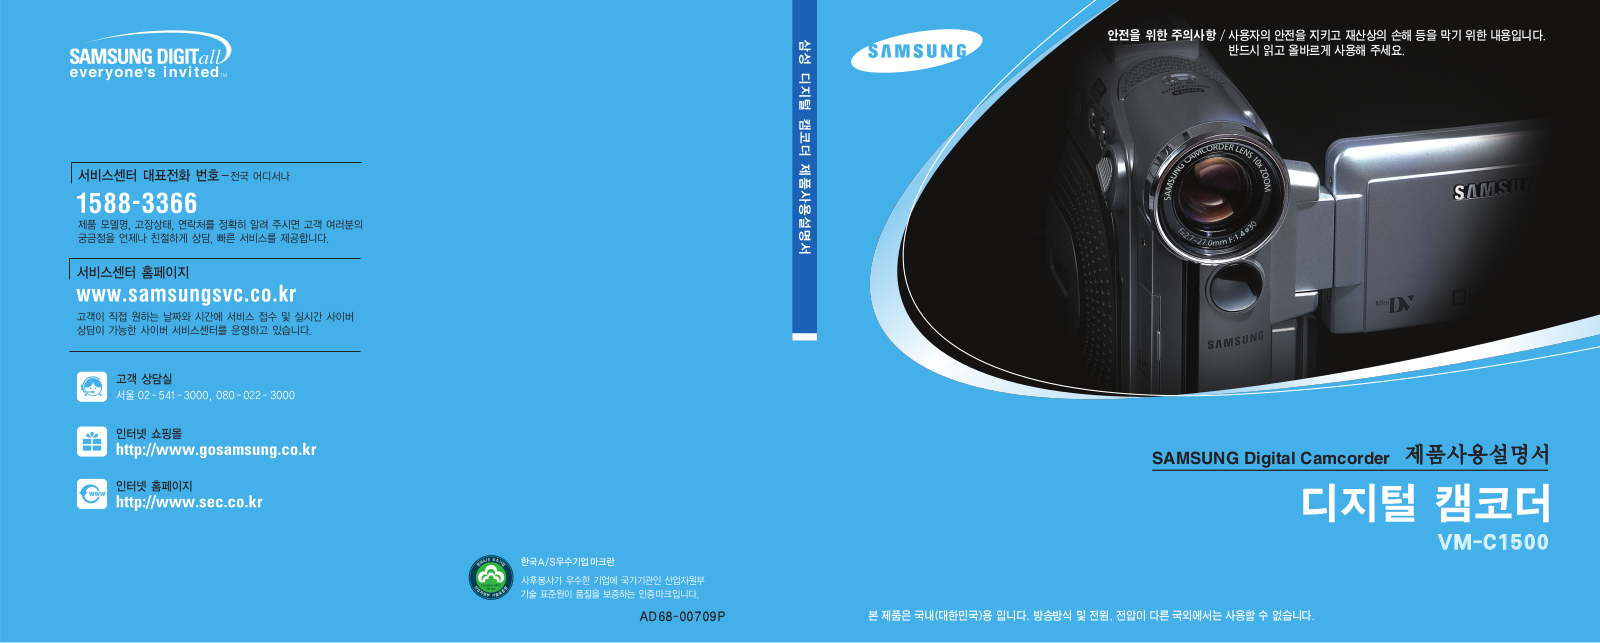 Samsung VM-C1500 User Manual